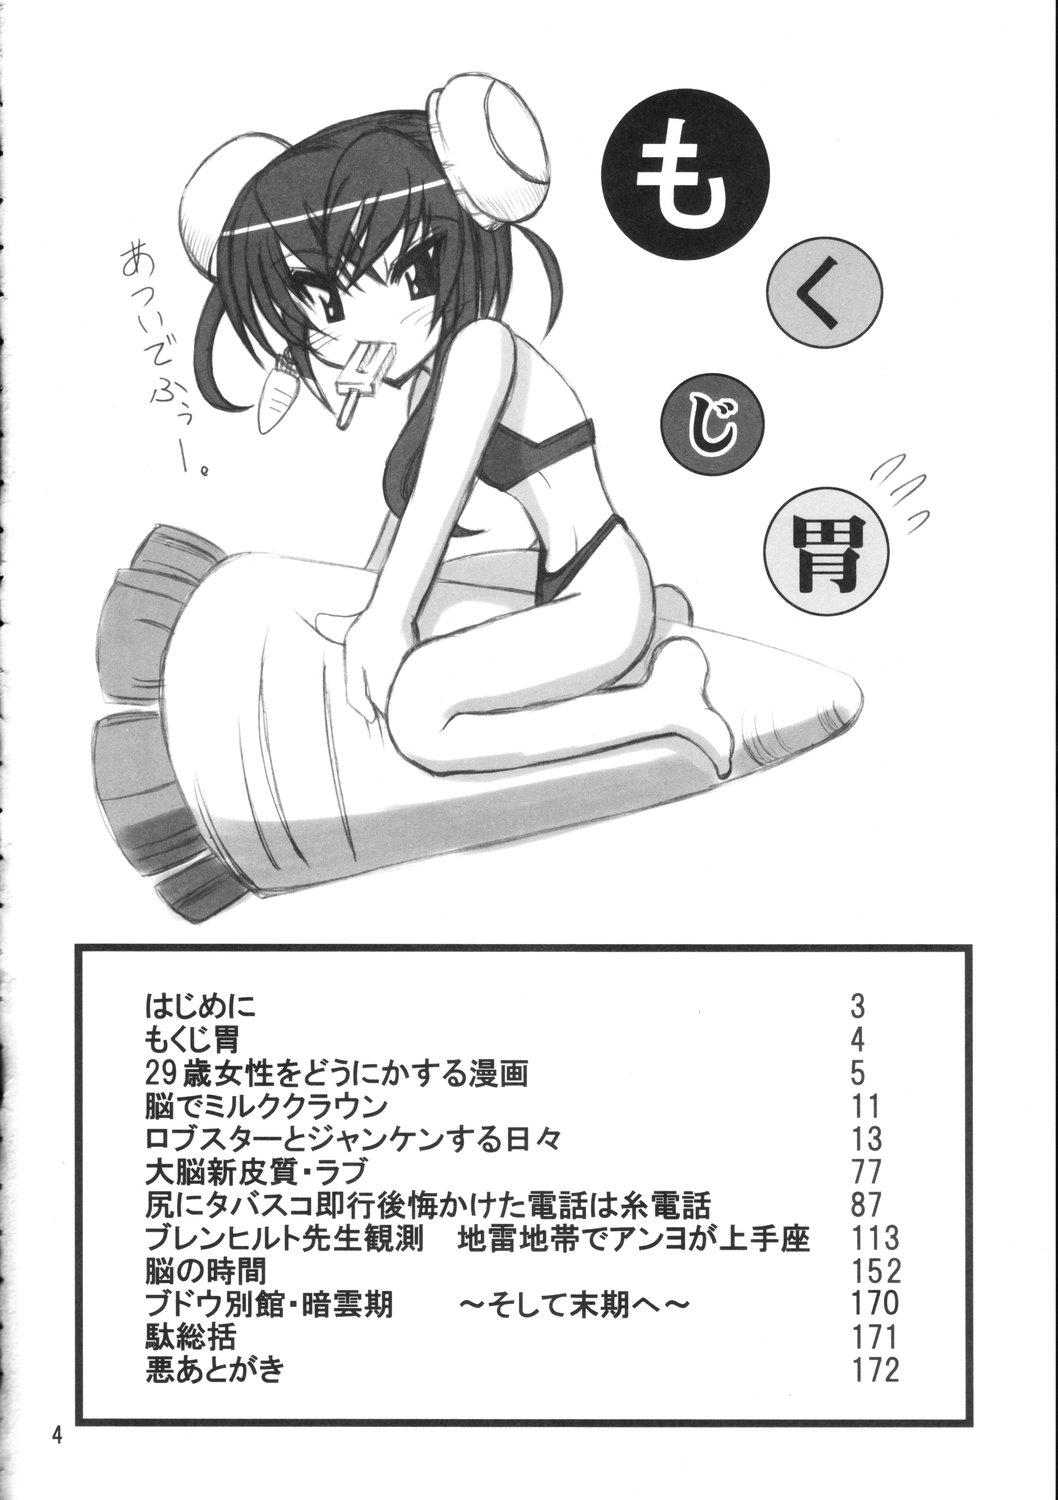 Culito Burenhiruto-sensei Kansoku Jirai Chitai de Anyo ga Jouzu - Zaregoto Hard Core Free Porn - Page 3